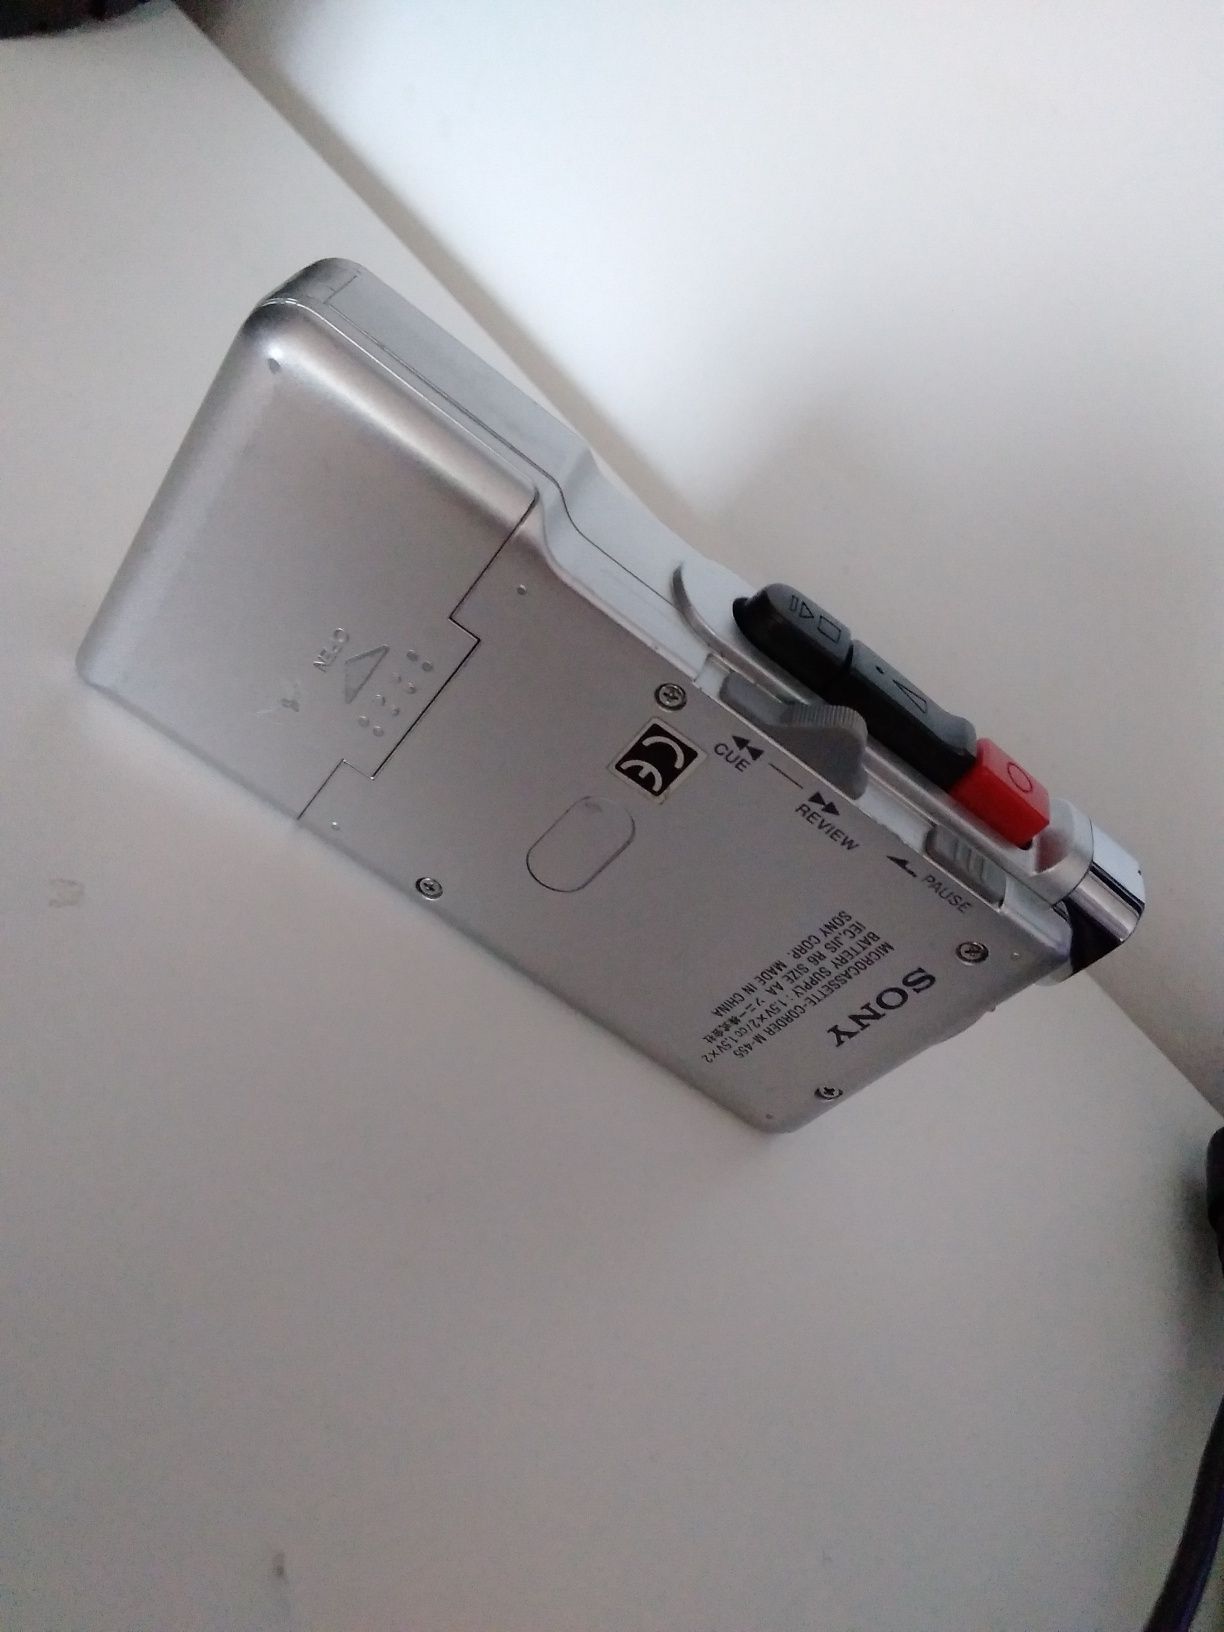 Sony Gravador Microcassete M-455, a funcionar (de jornalista) a pilhas